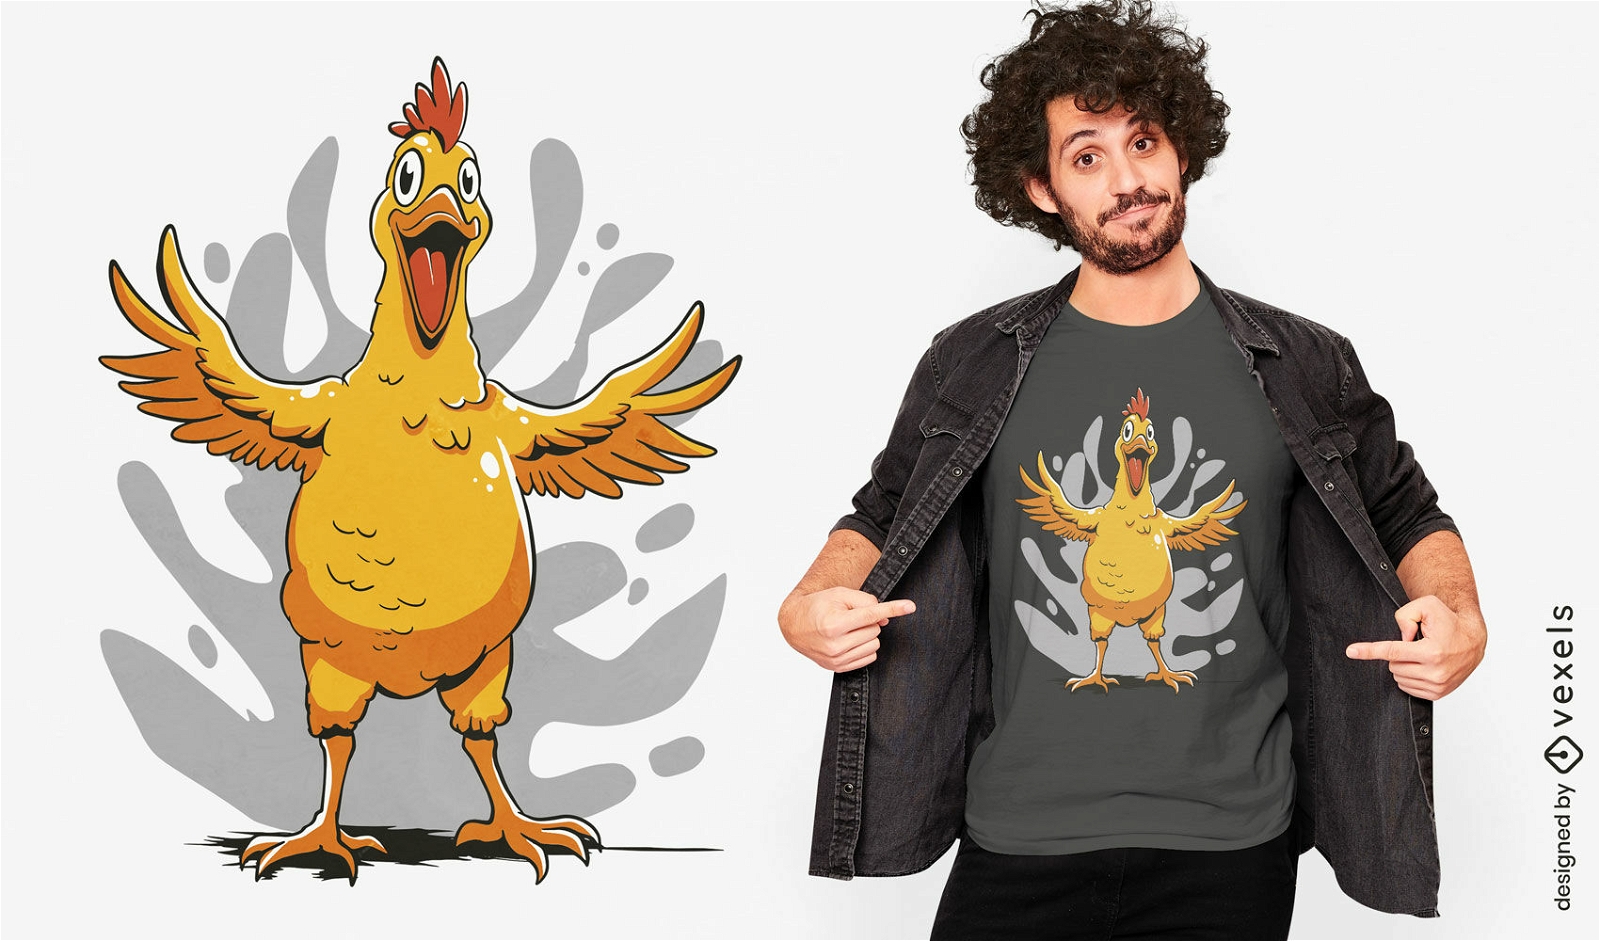 Dise?o de camiseta de pollo gritando.